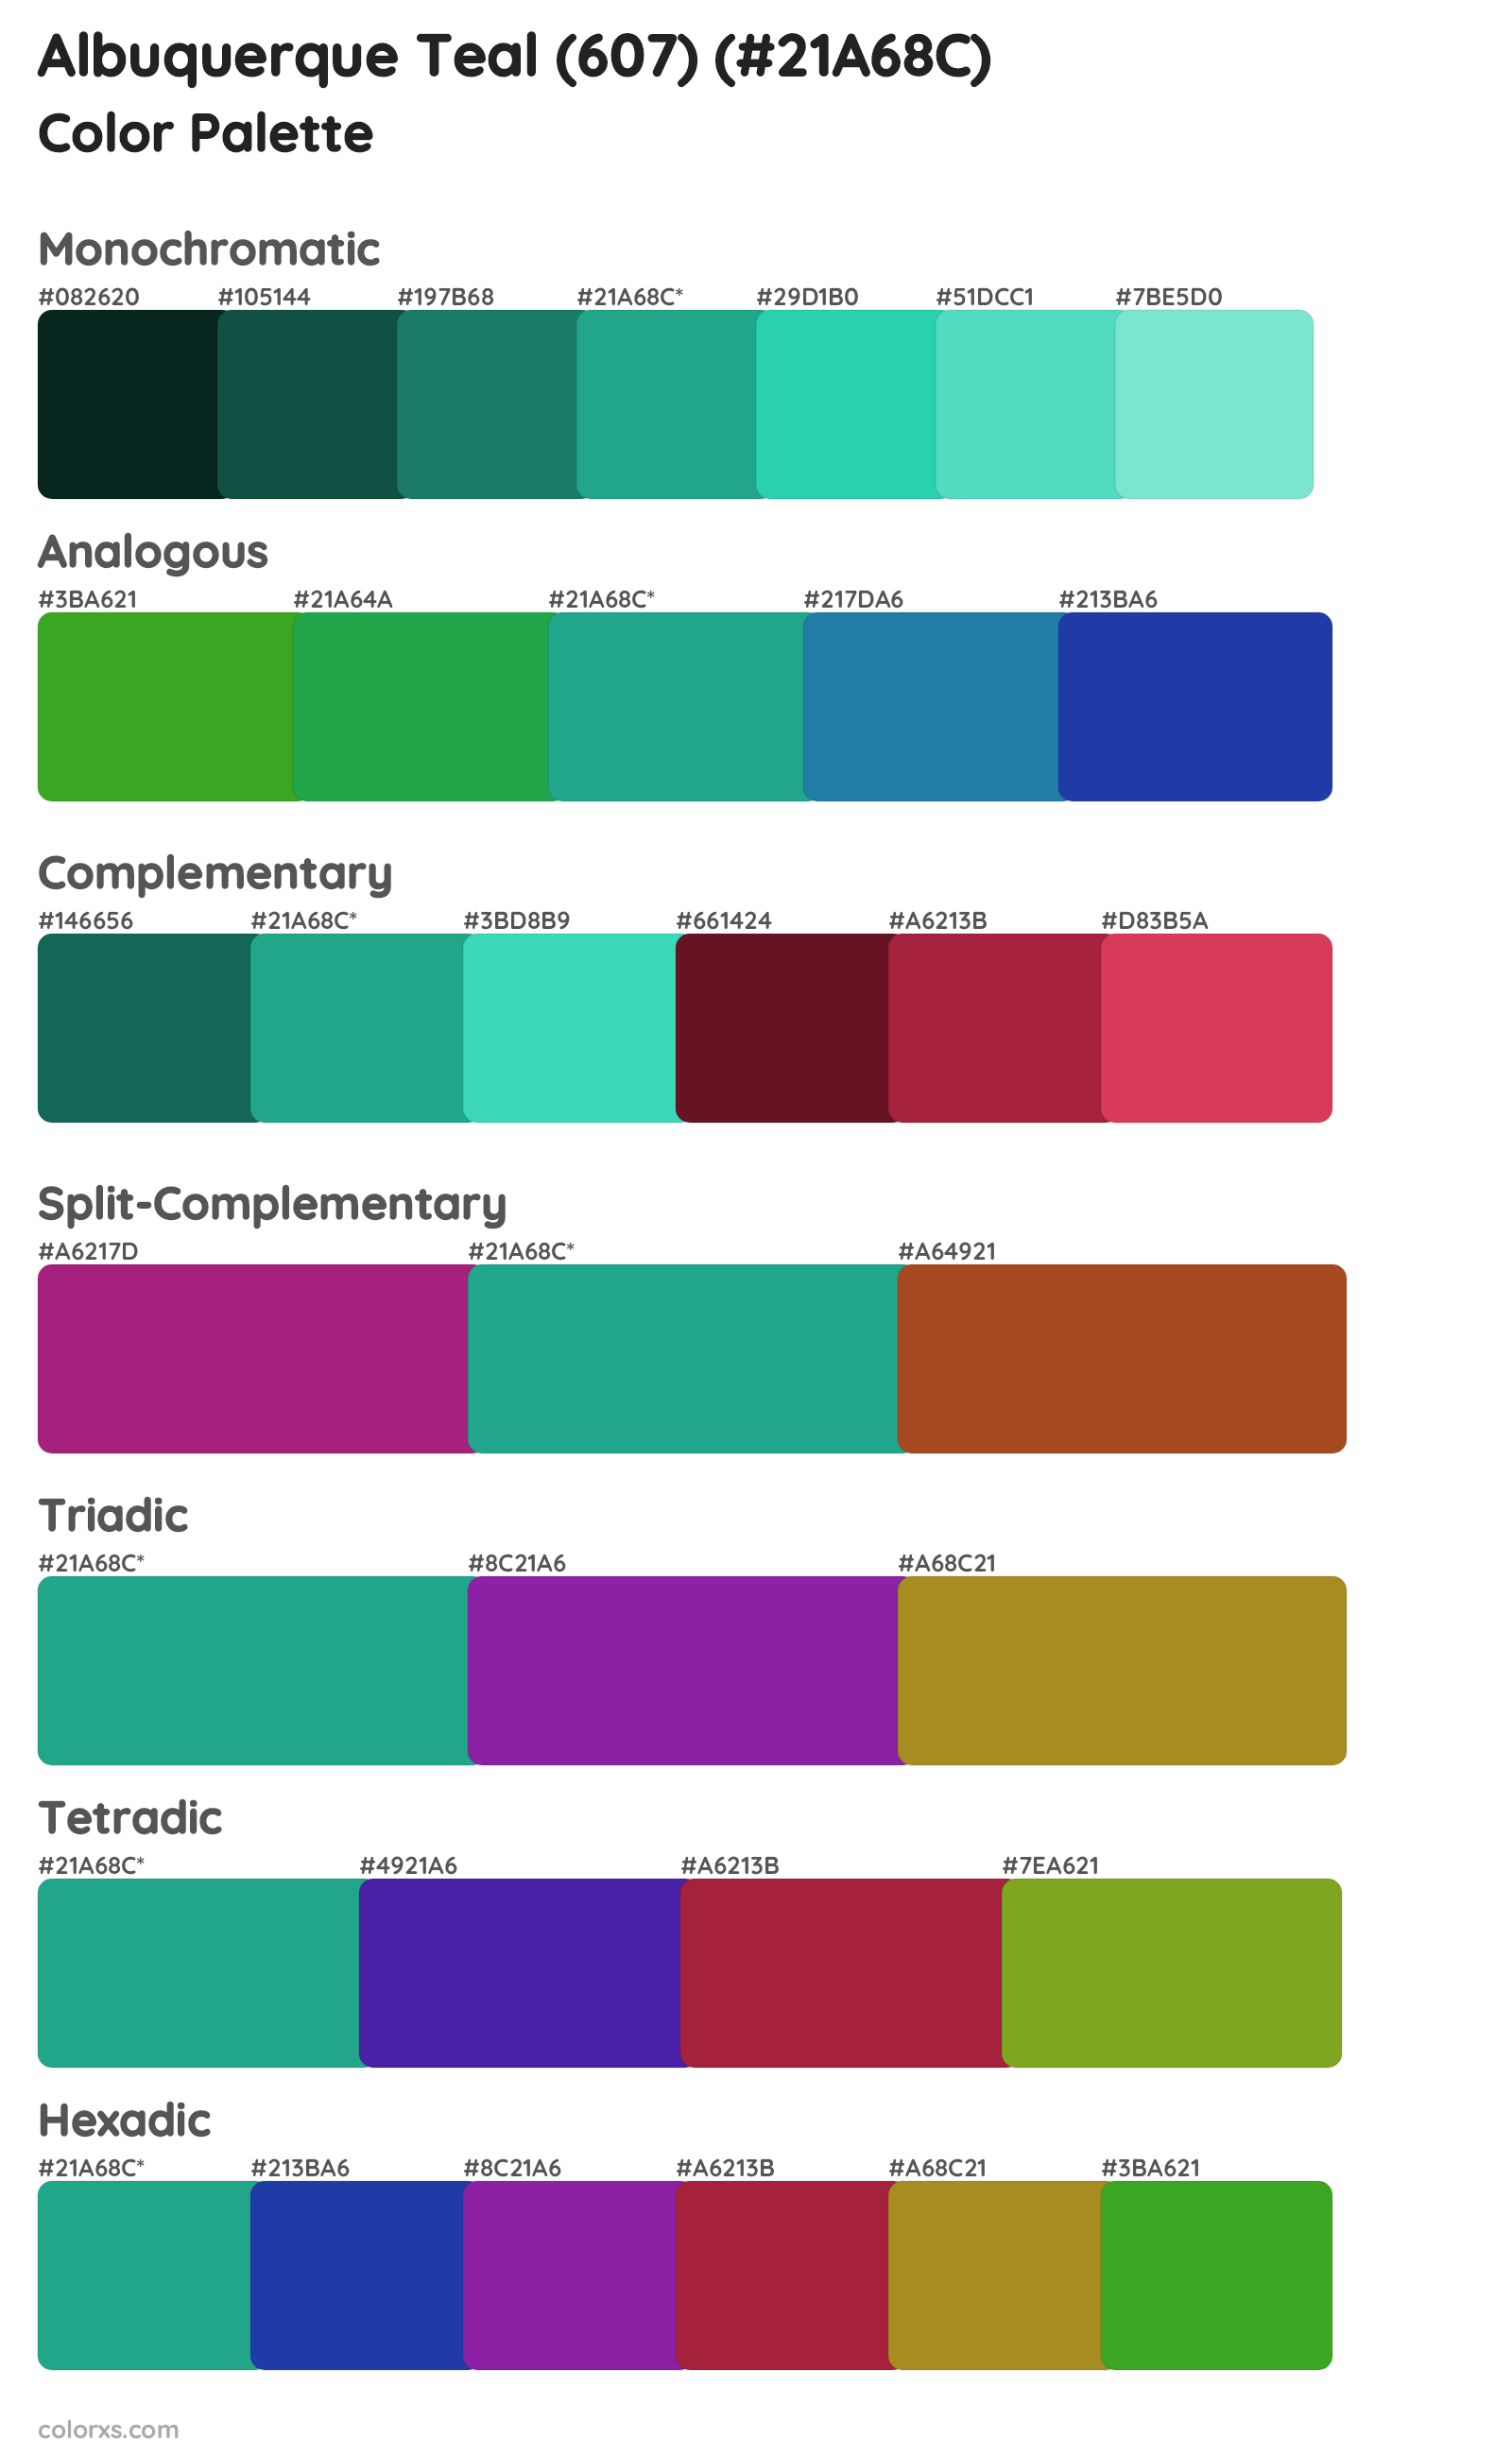 Albuquerque Teal (607) Color Scheme Palettes